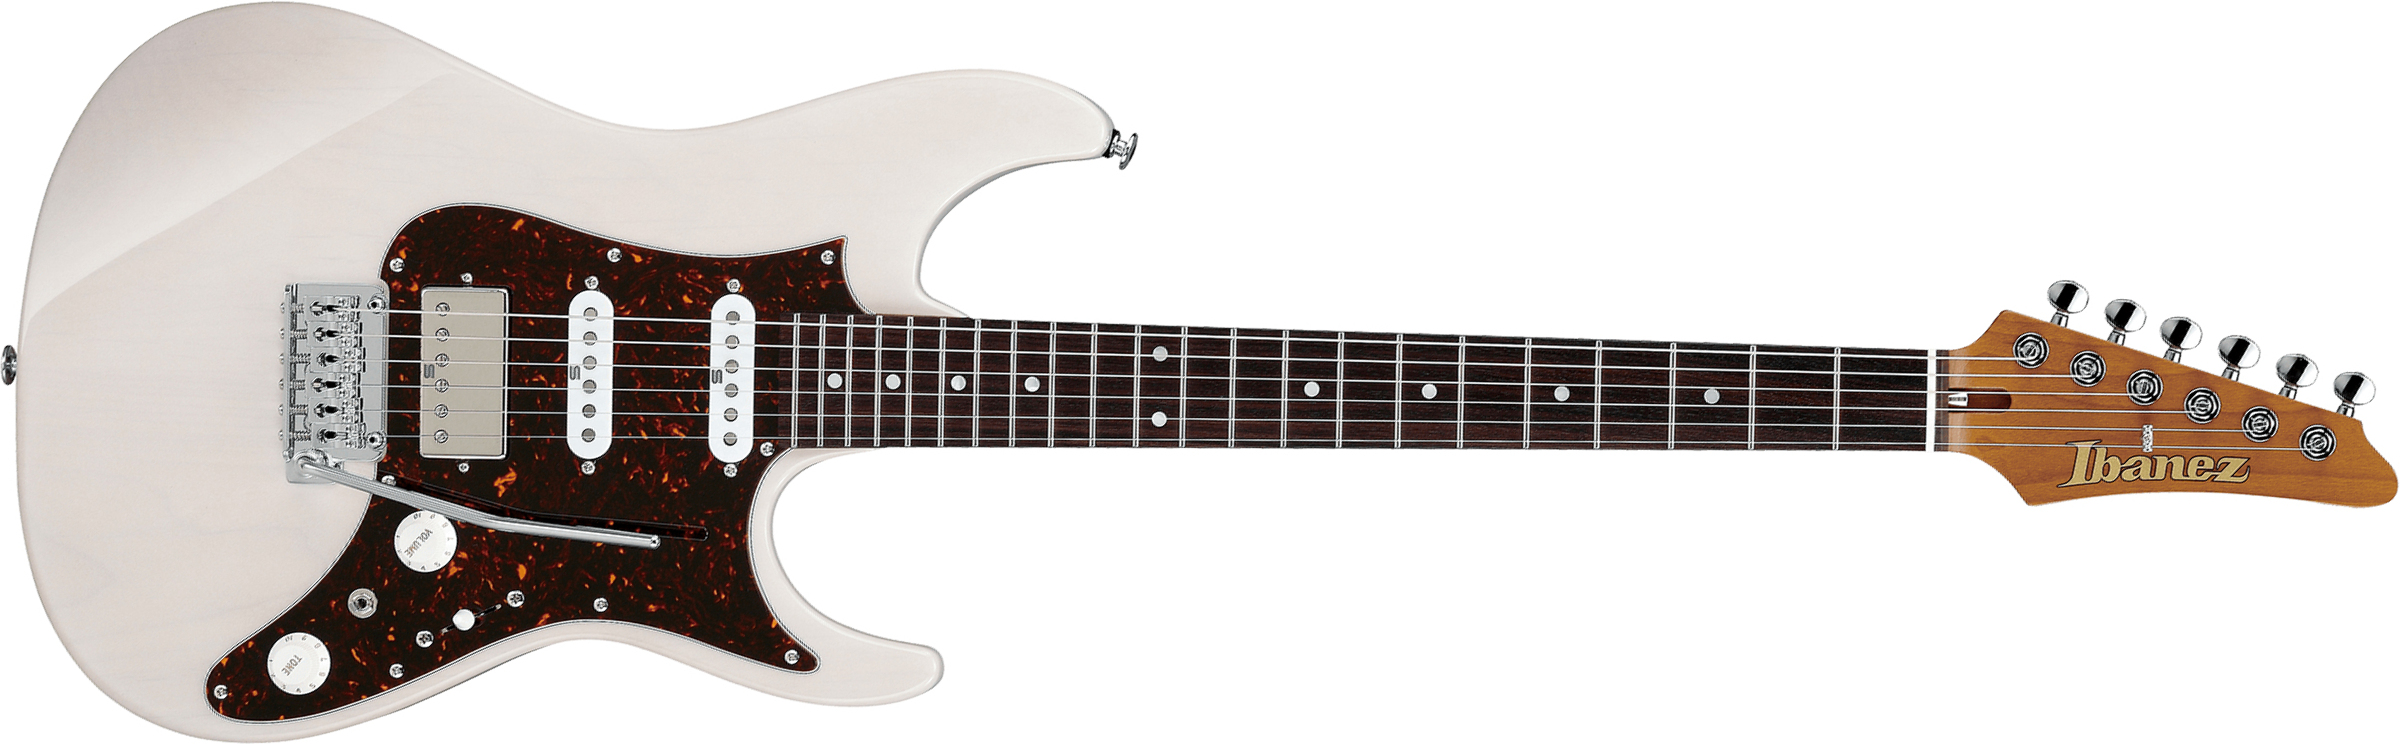 Ibanez Az2204n Awd Prestige Jap Hss Seymour Duncan Trem Rw - Antique White Blonde - Elektrische gitaar in Str-vorm - Main picture